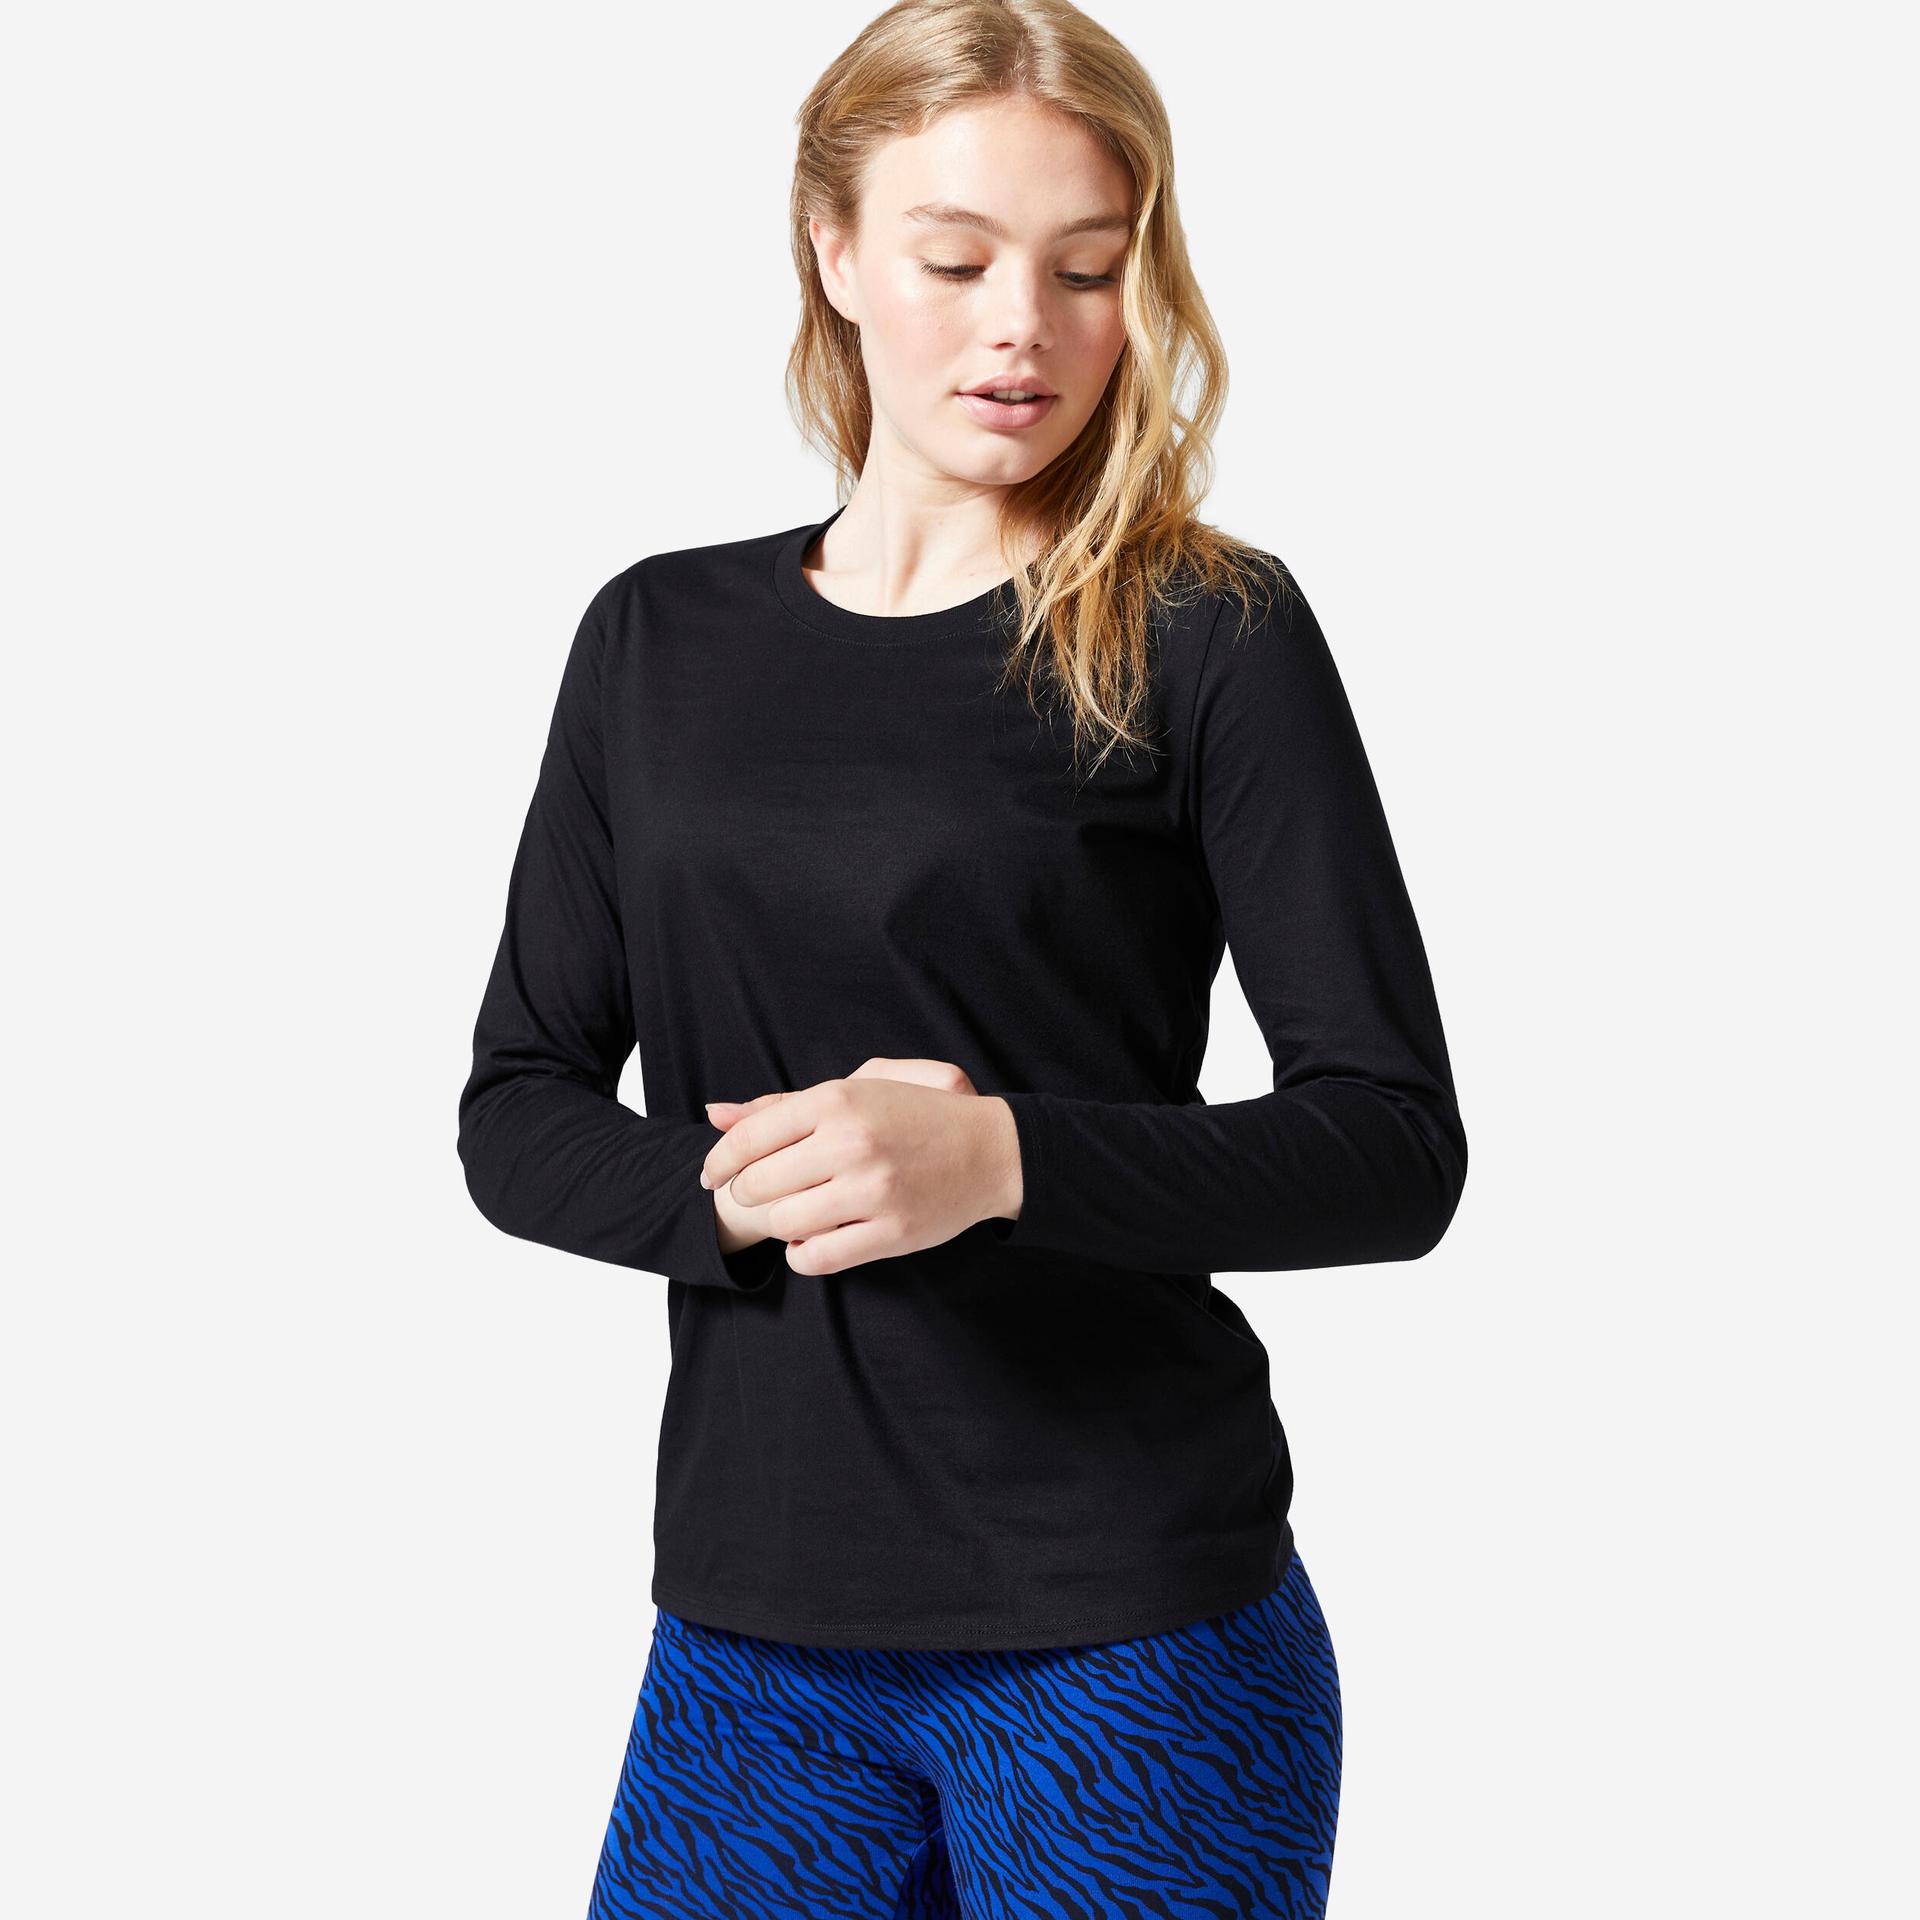 women's-t-shirt-long-sleeved-100-for-gym-black